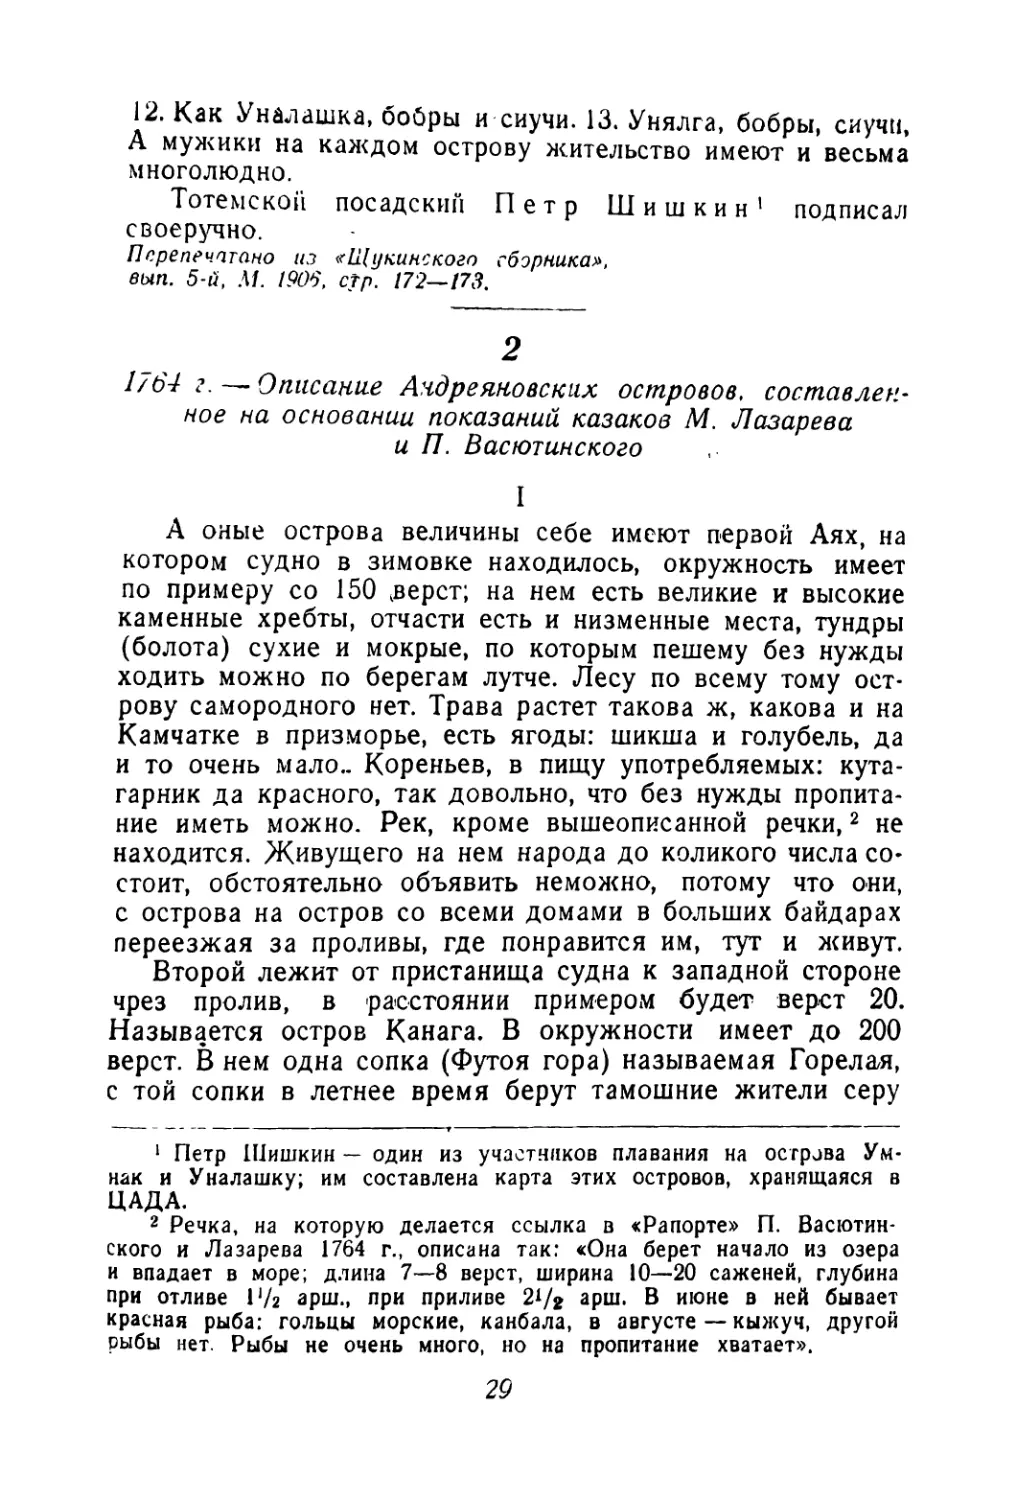 2. 1764 г.—Описание Андреяновских островов, составленное на основании показаний казаков М. Лазарева и П. Васюлинского